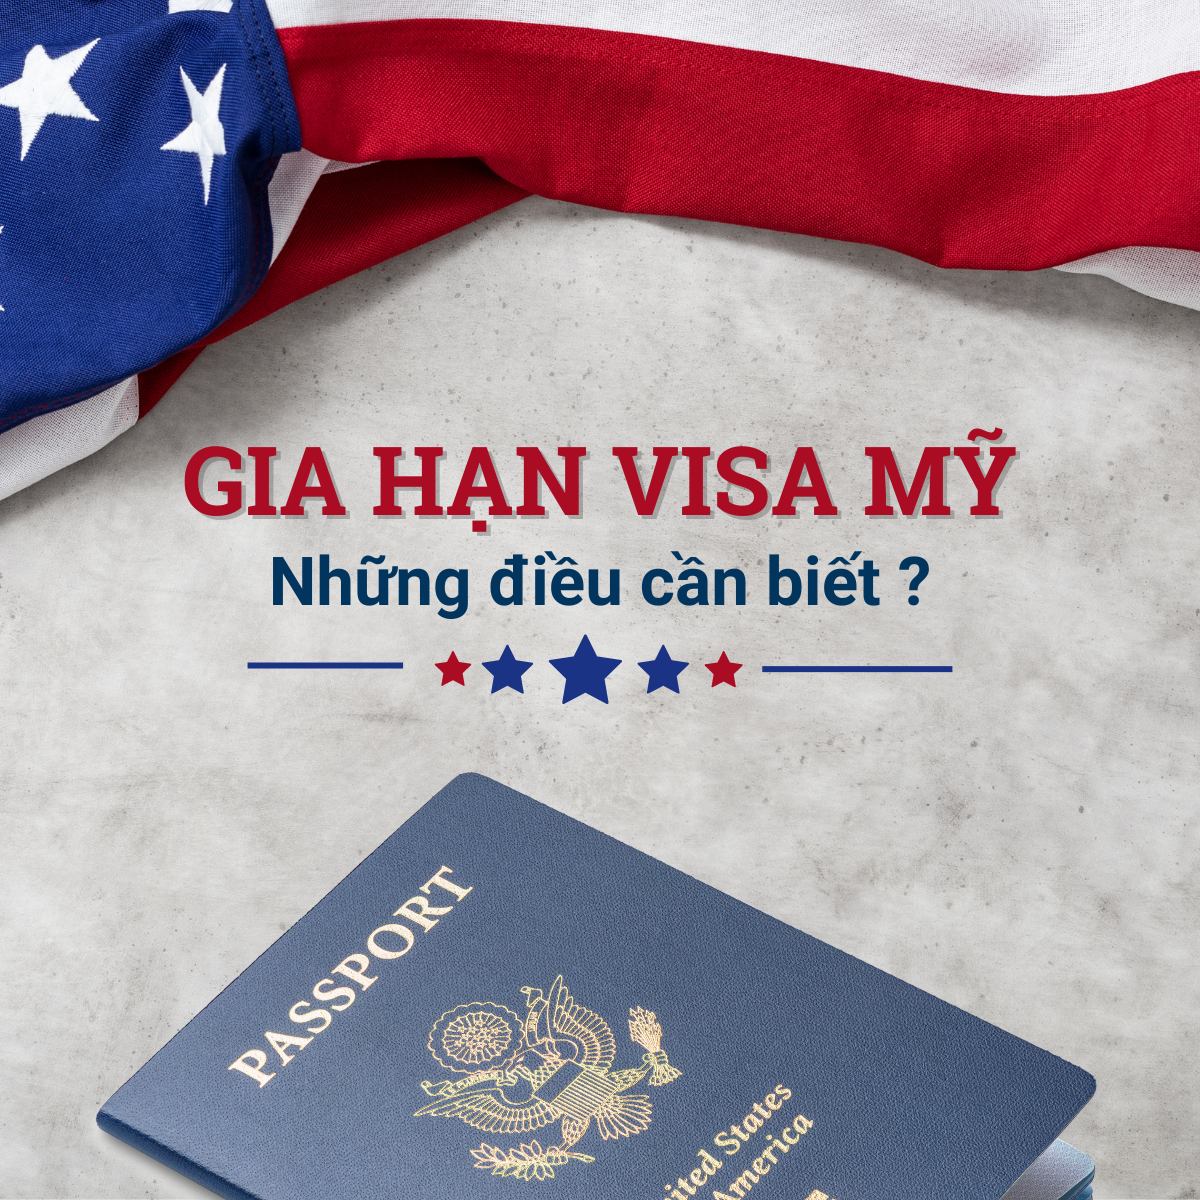 Gia hạn visa Mỹ: Loại visa nào có thể gia hạn và các bước gia hạn visa Mỹ nhanh chóng